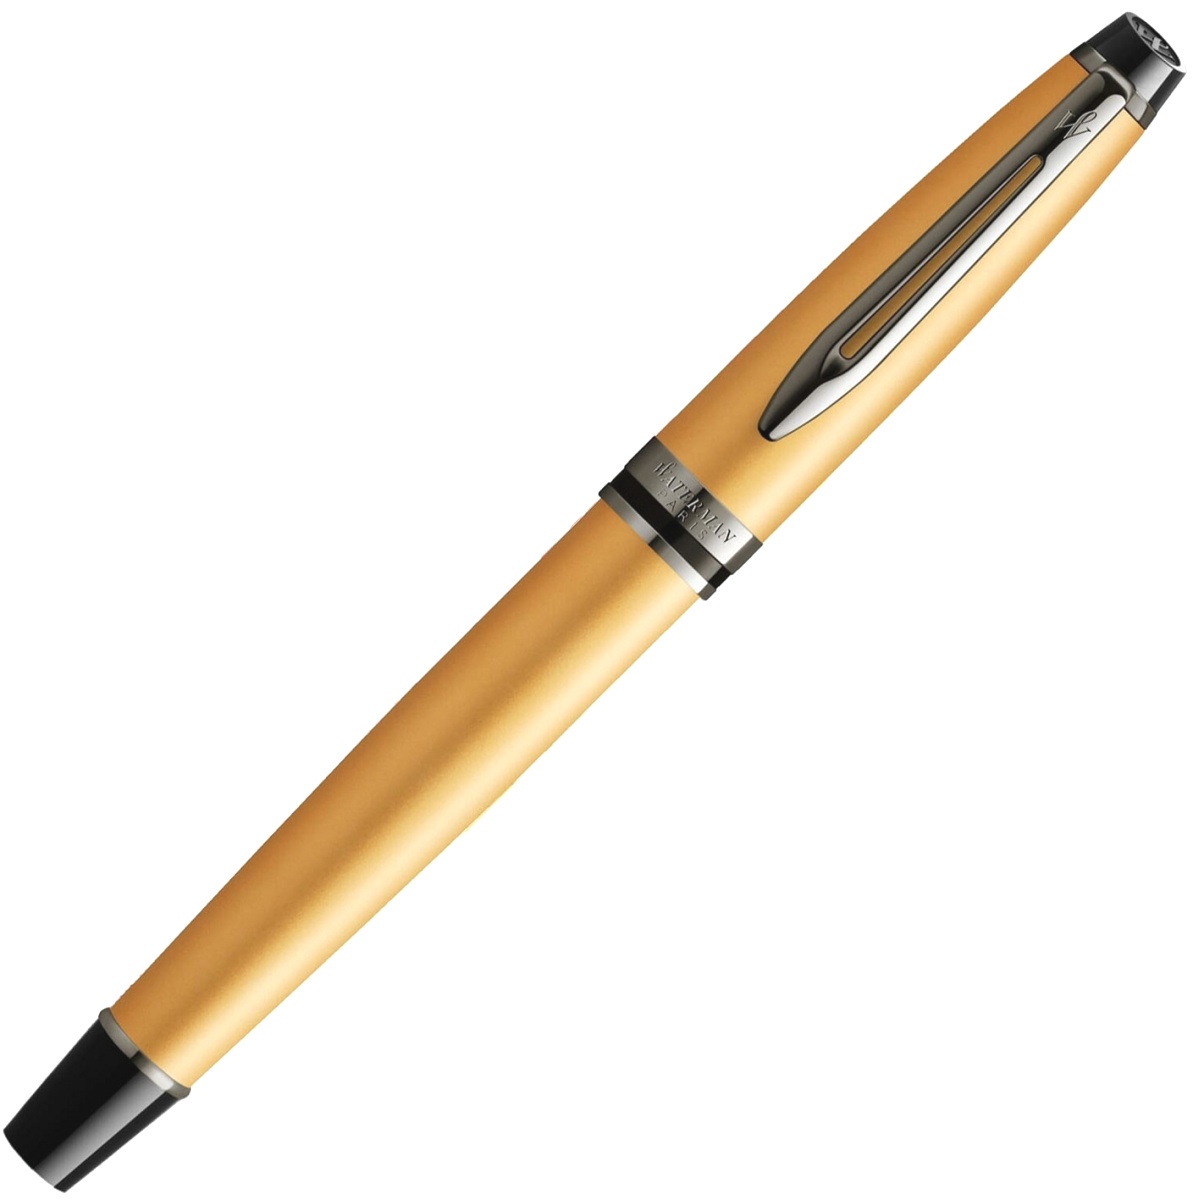  Ручка перьевая Waterman Expert DeLuxe, Metallic Gold RT (Перо F), фото 2